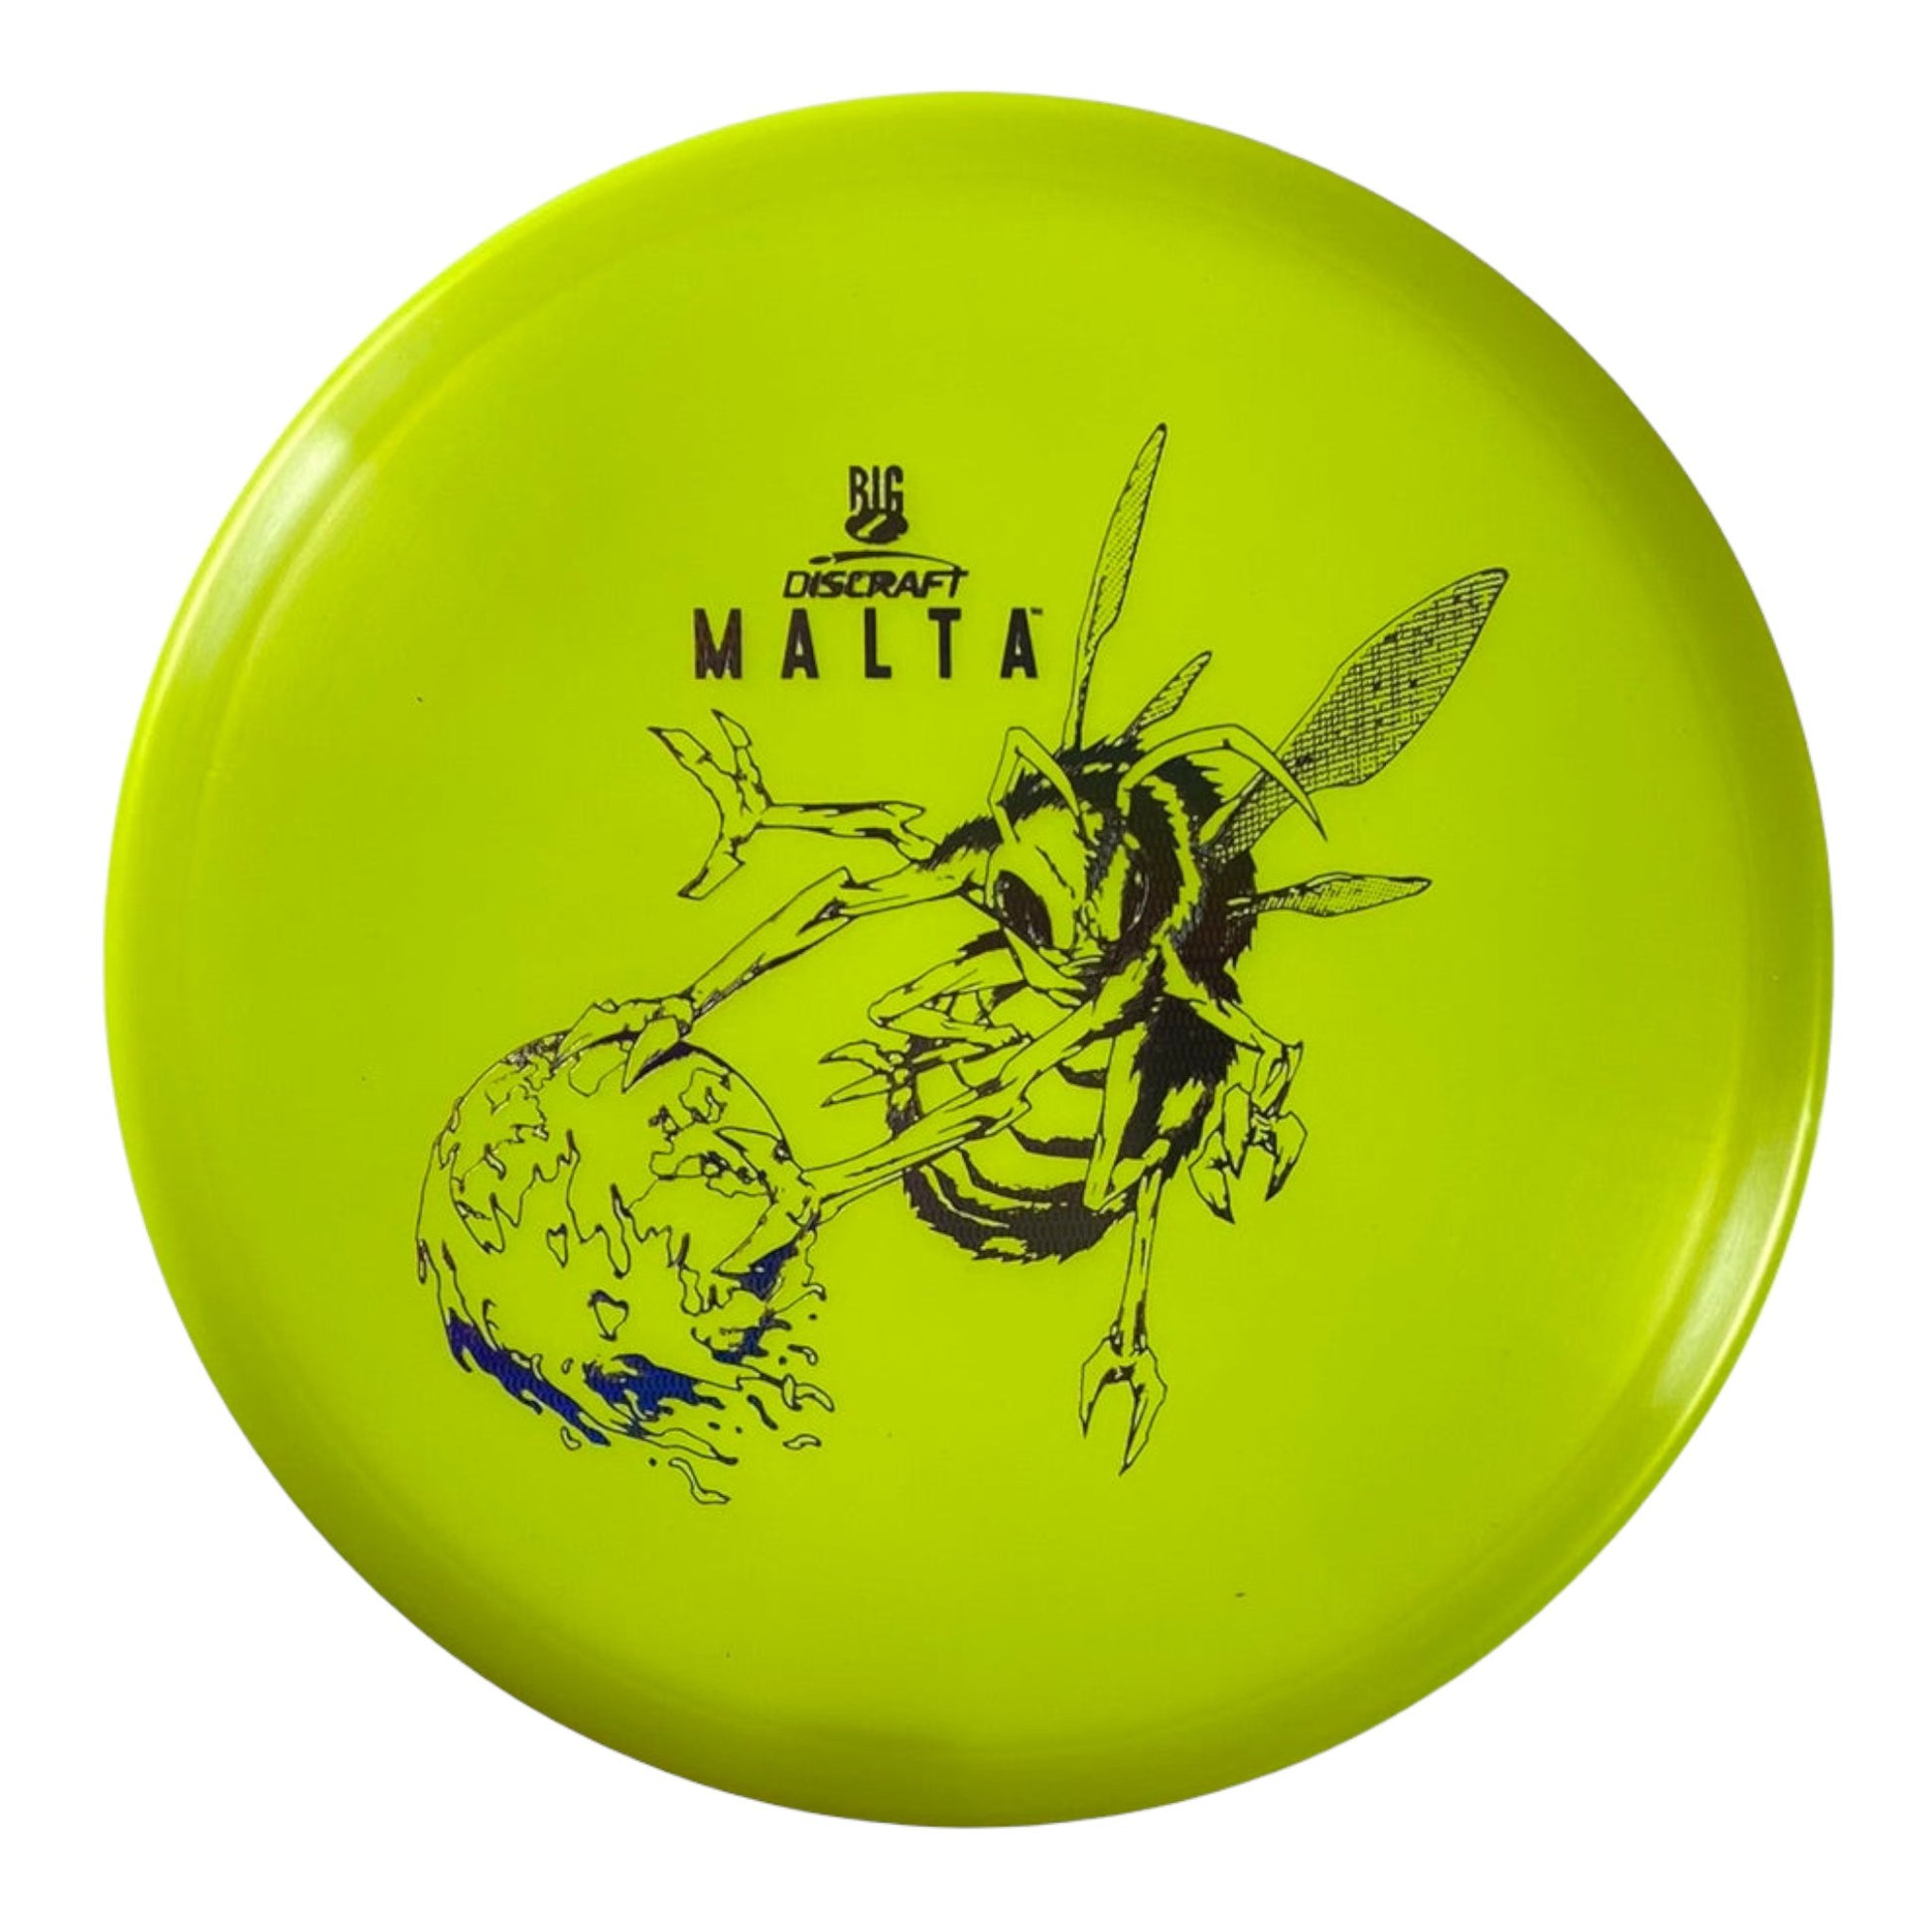 Discraft Malta | Big Z | Yellow/Holo 175g (Paul McBeth) Disc Golf